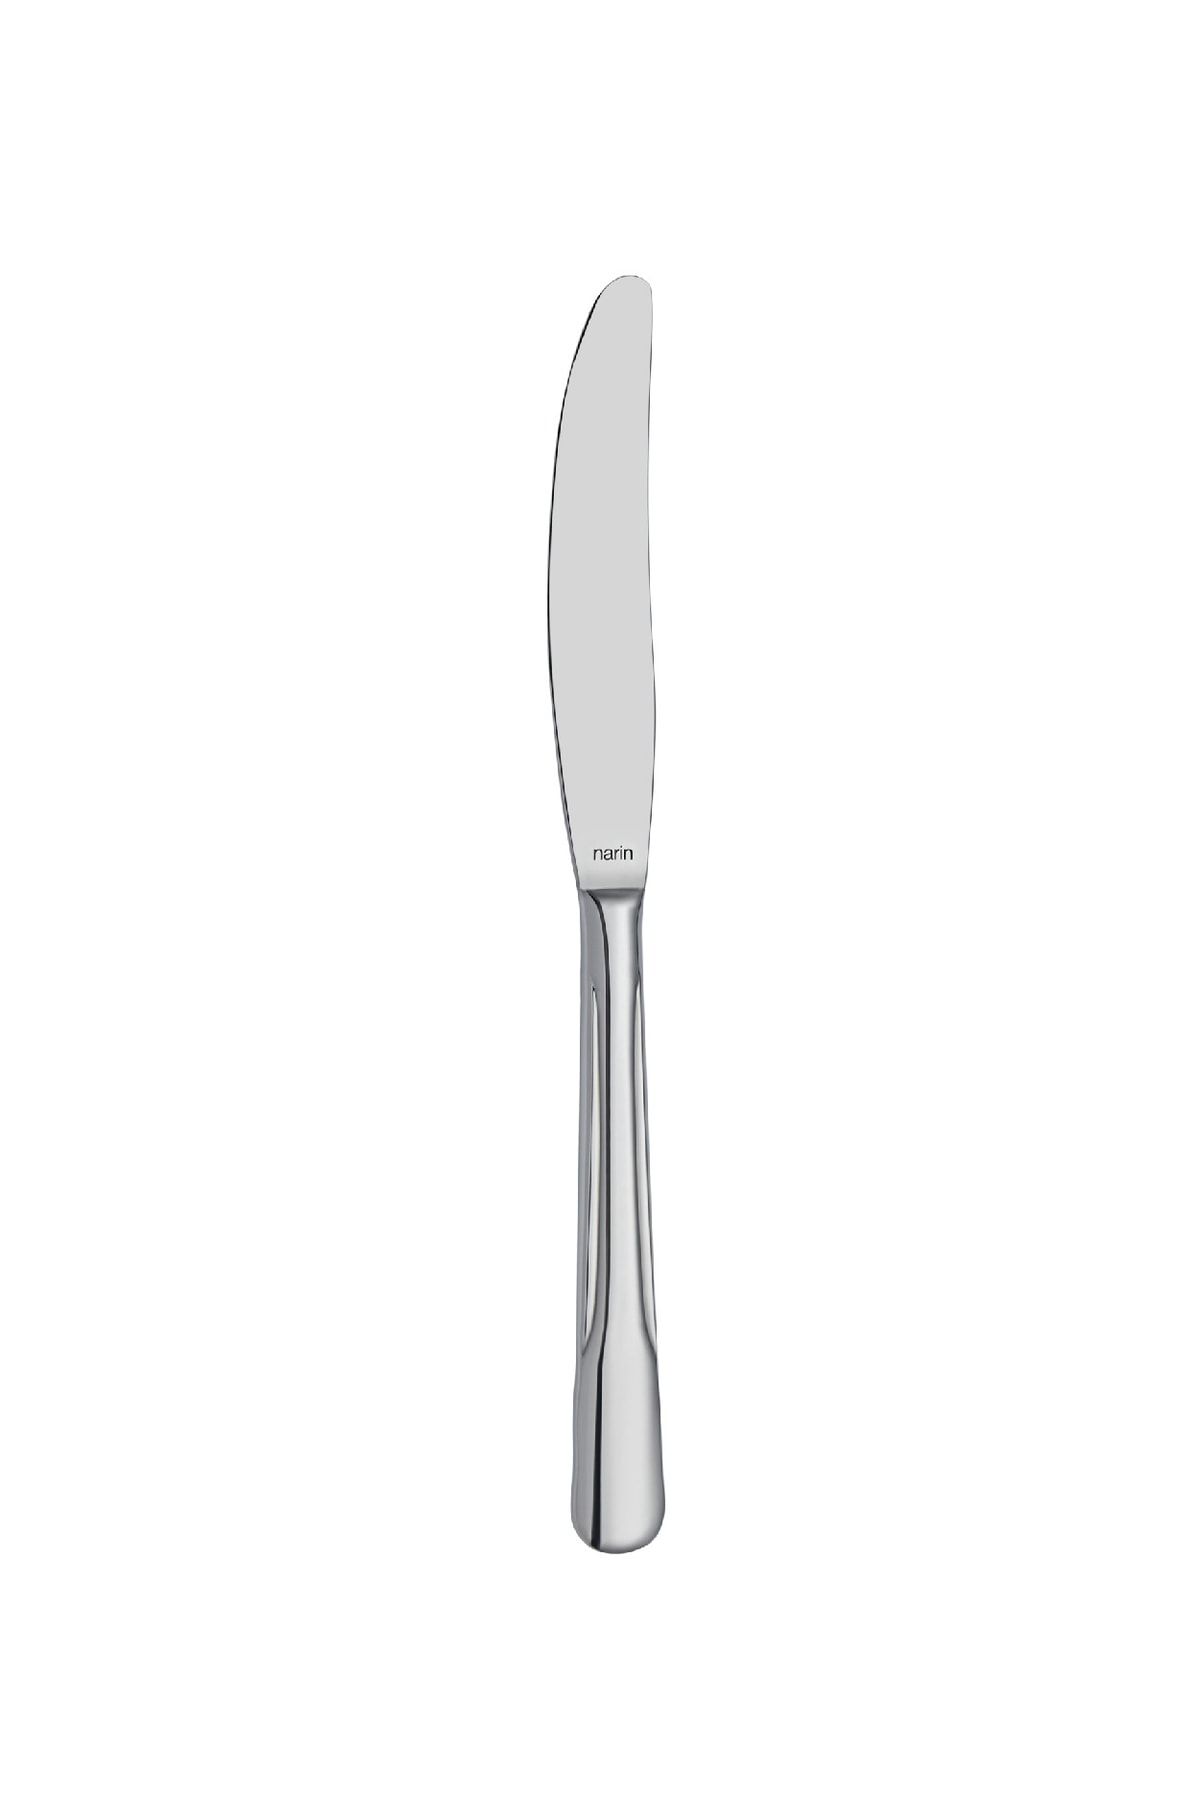 Narin Gastronomy Yemek Bıçak - Sade - 12 Adet